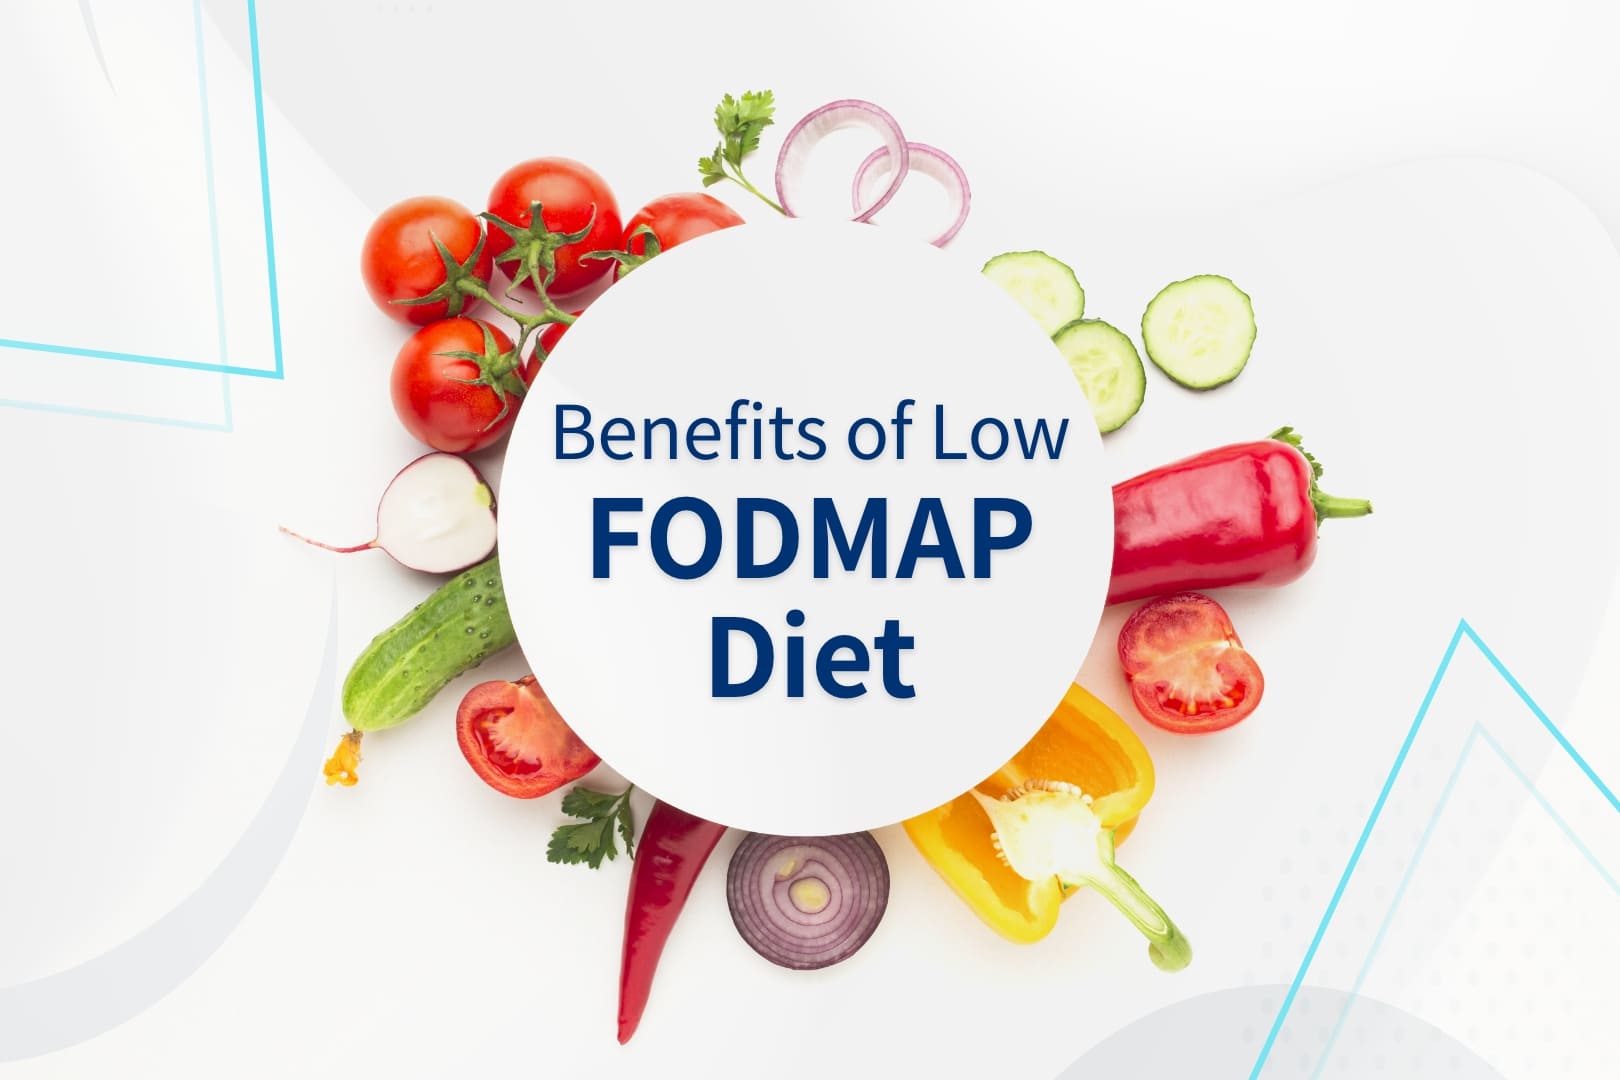 Benefits of Low FODMAP Diet